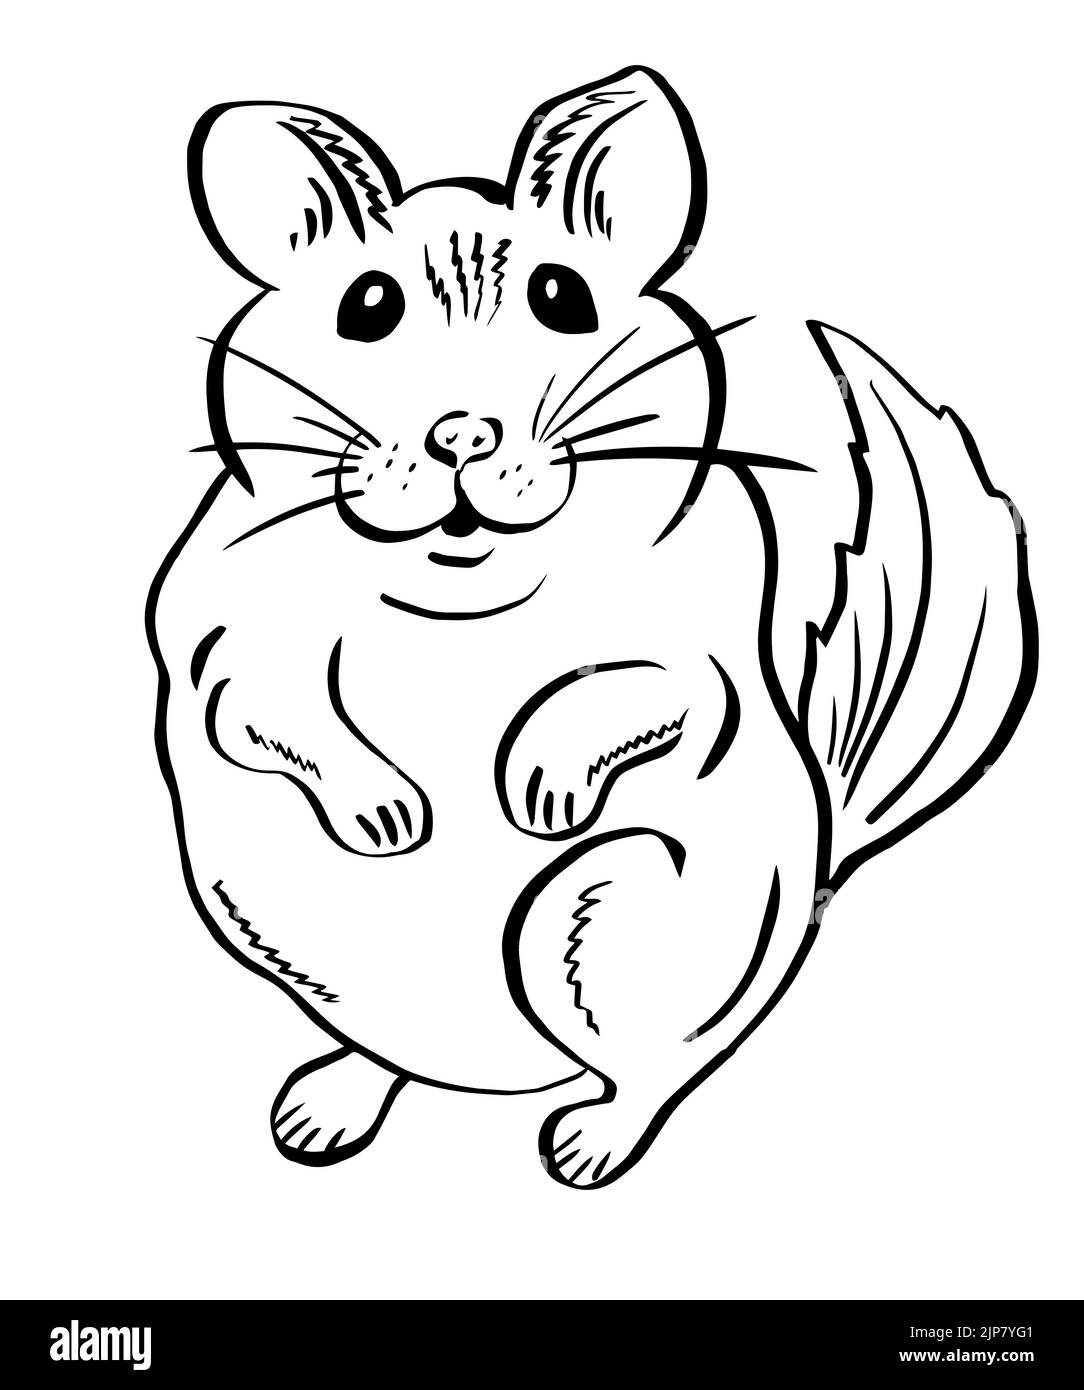 Niedliche lustige Chinchilla für Aufkleber. Handgezeichnetes Nagetier: Maus, Hamster oder Chinchilla. Vektor, Illustration. Stock Vektor